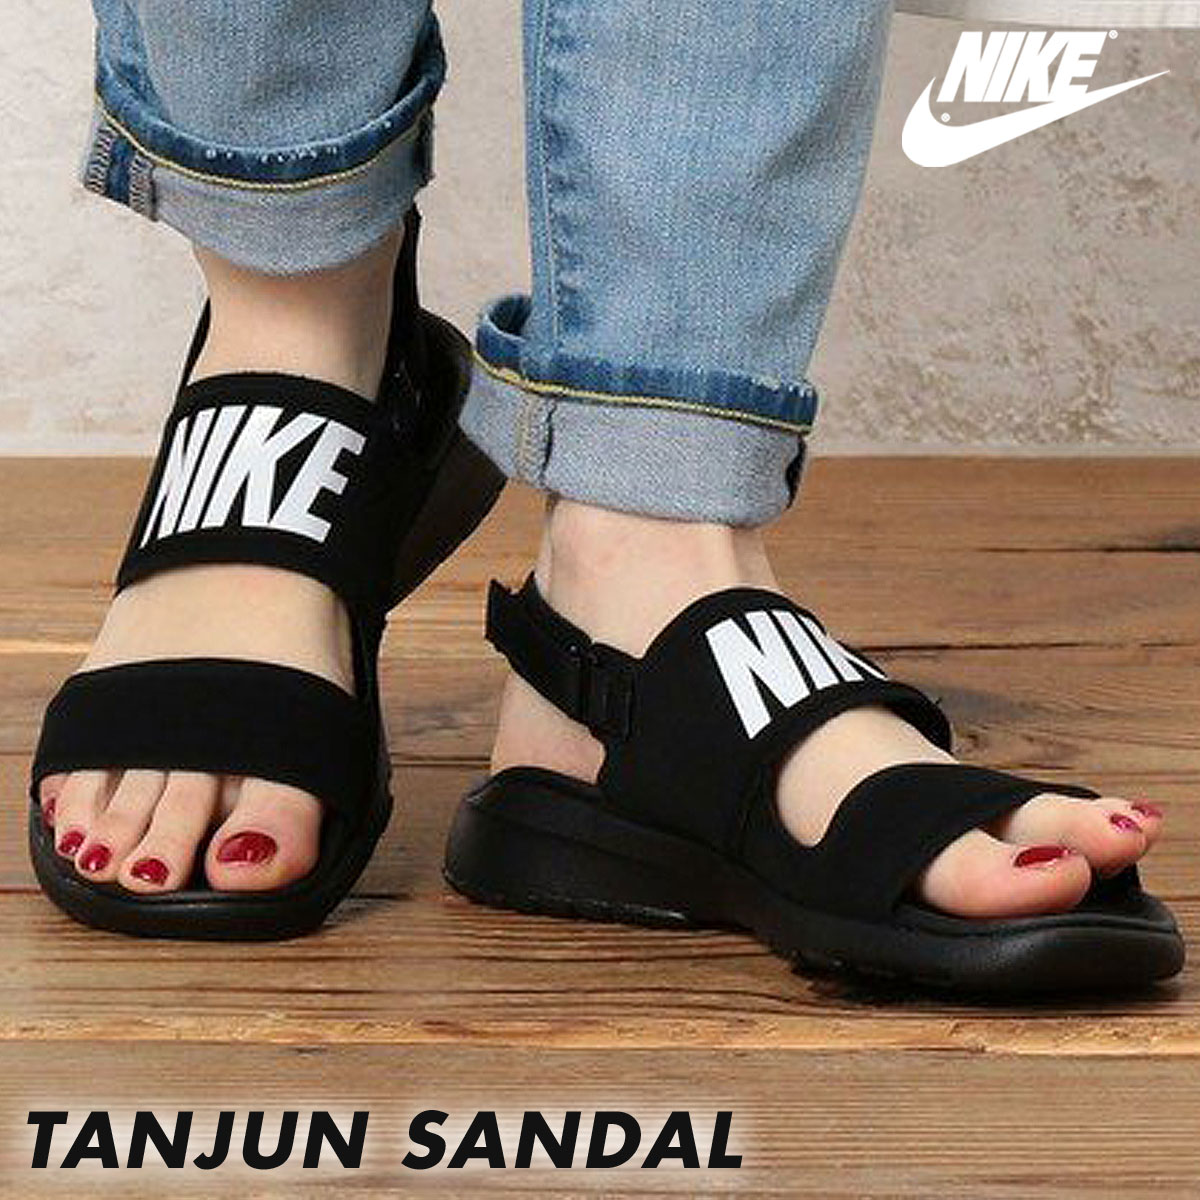 nike sports sandals Cheaper Than Retail 